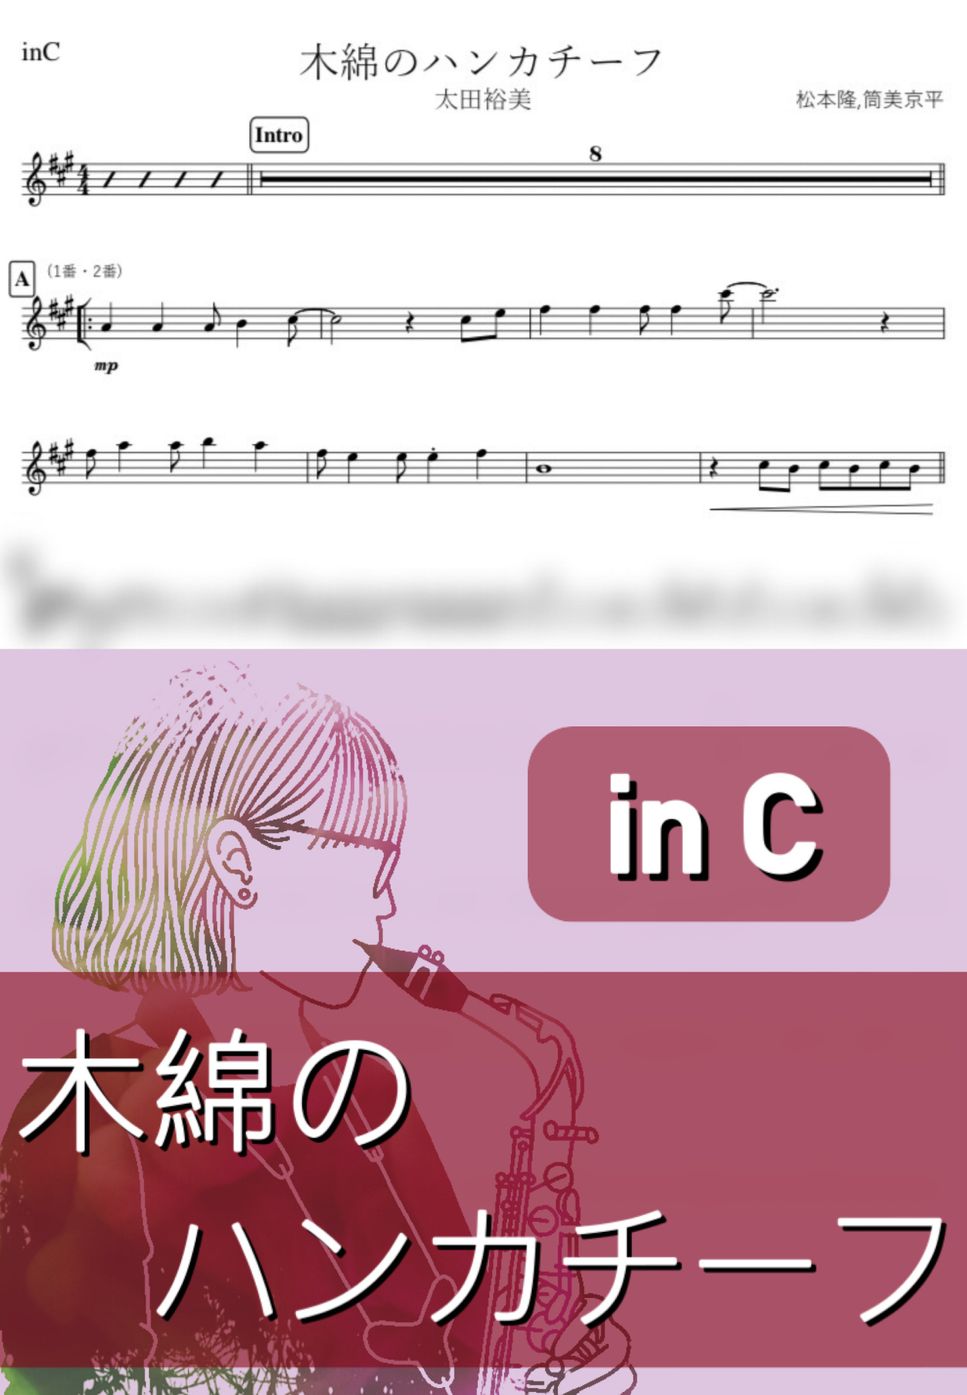 太田裕美 - 木綿のハンカチーフ (C) by kanamusic